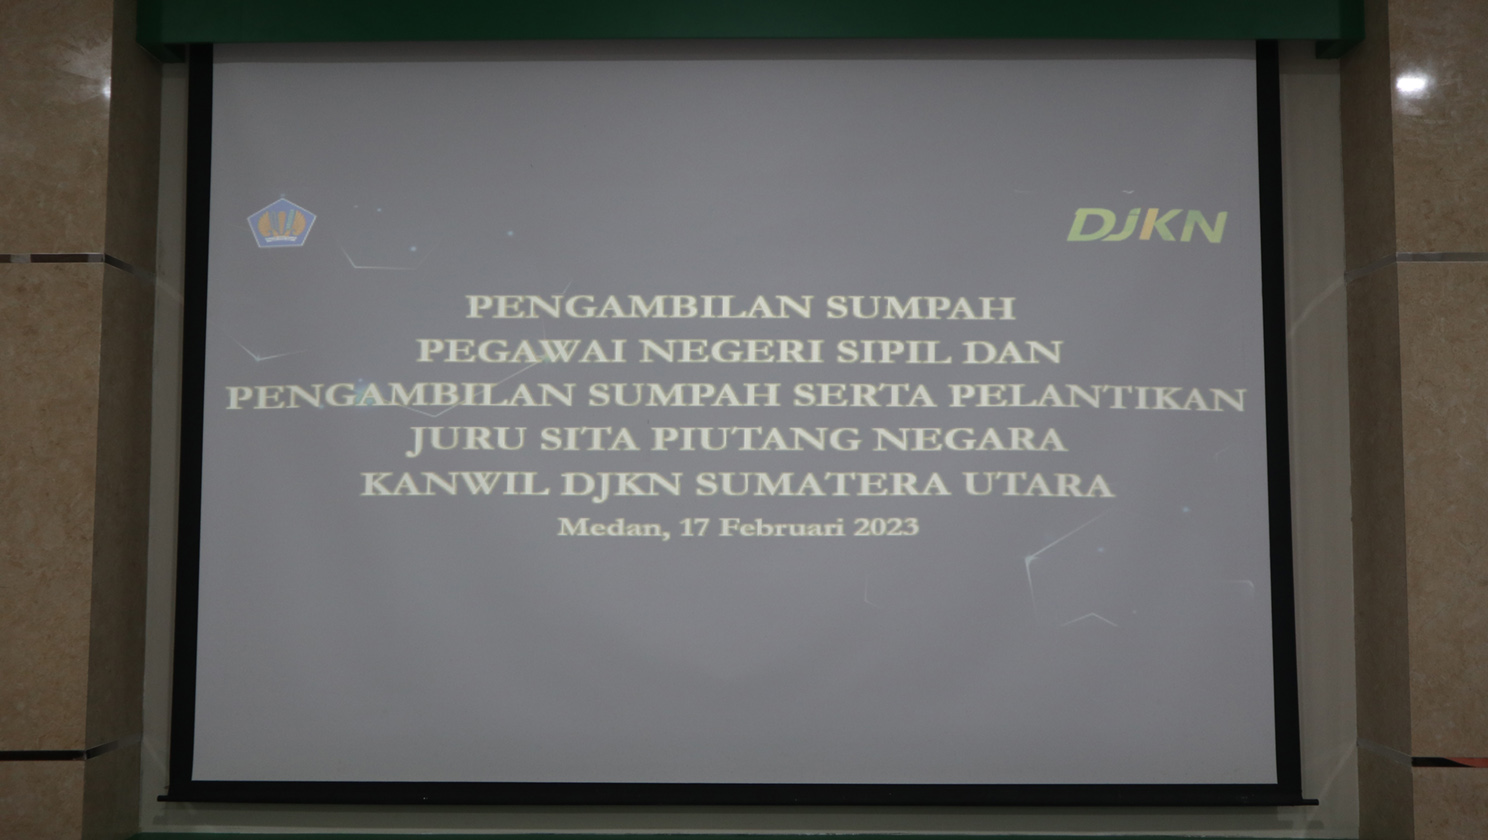 Pelantikan  PNS dan Juru Sita di Lingkungan Kanwil DJKN Sumatera Utara